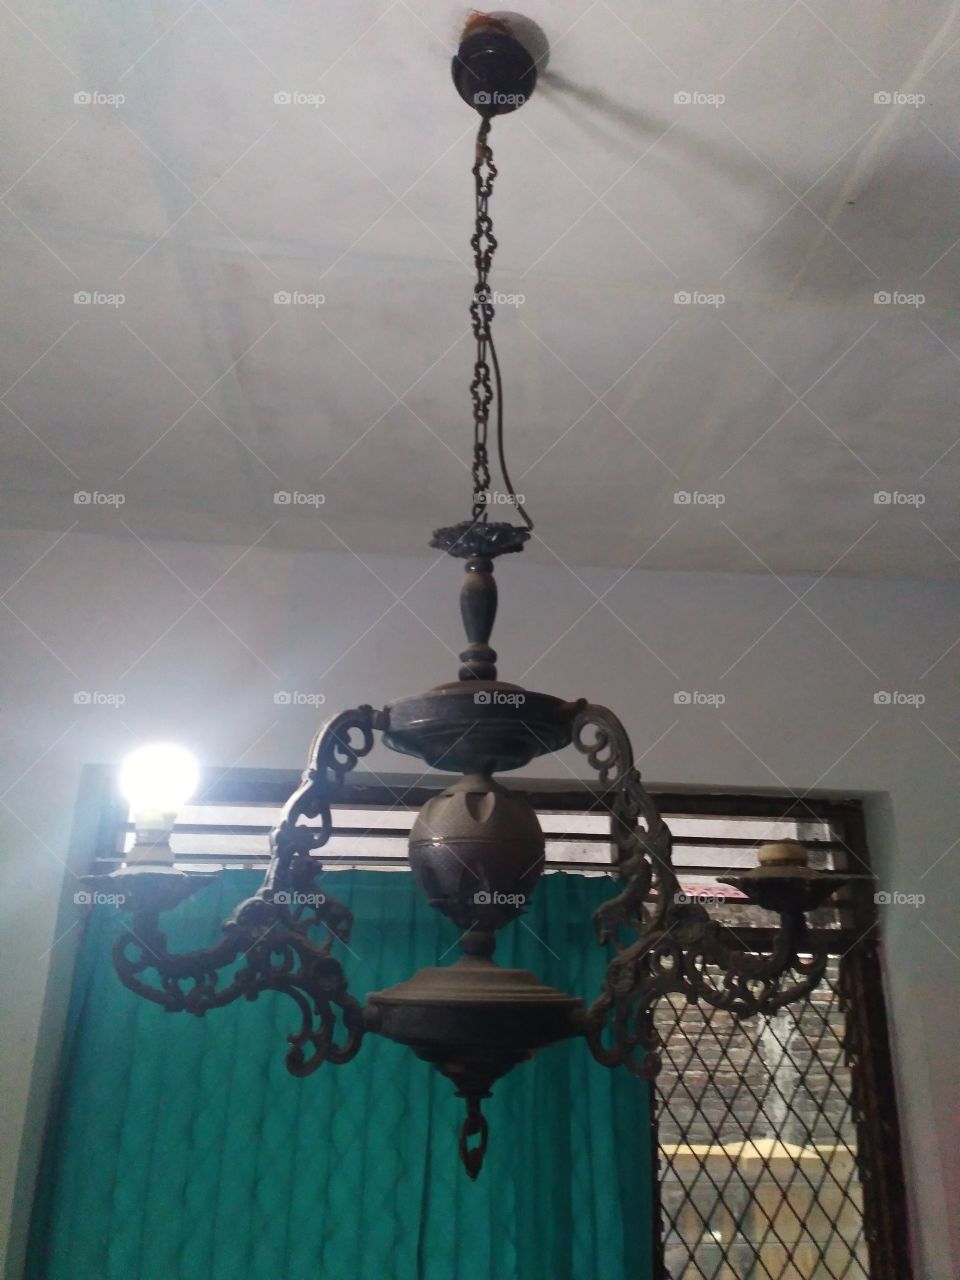 Tradisional lamp